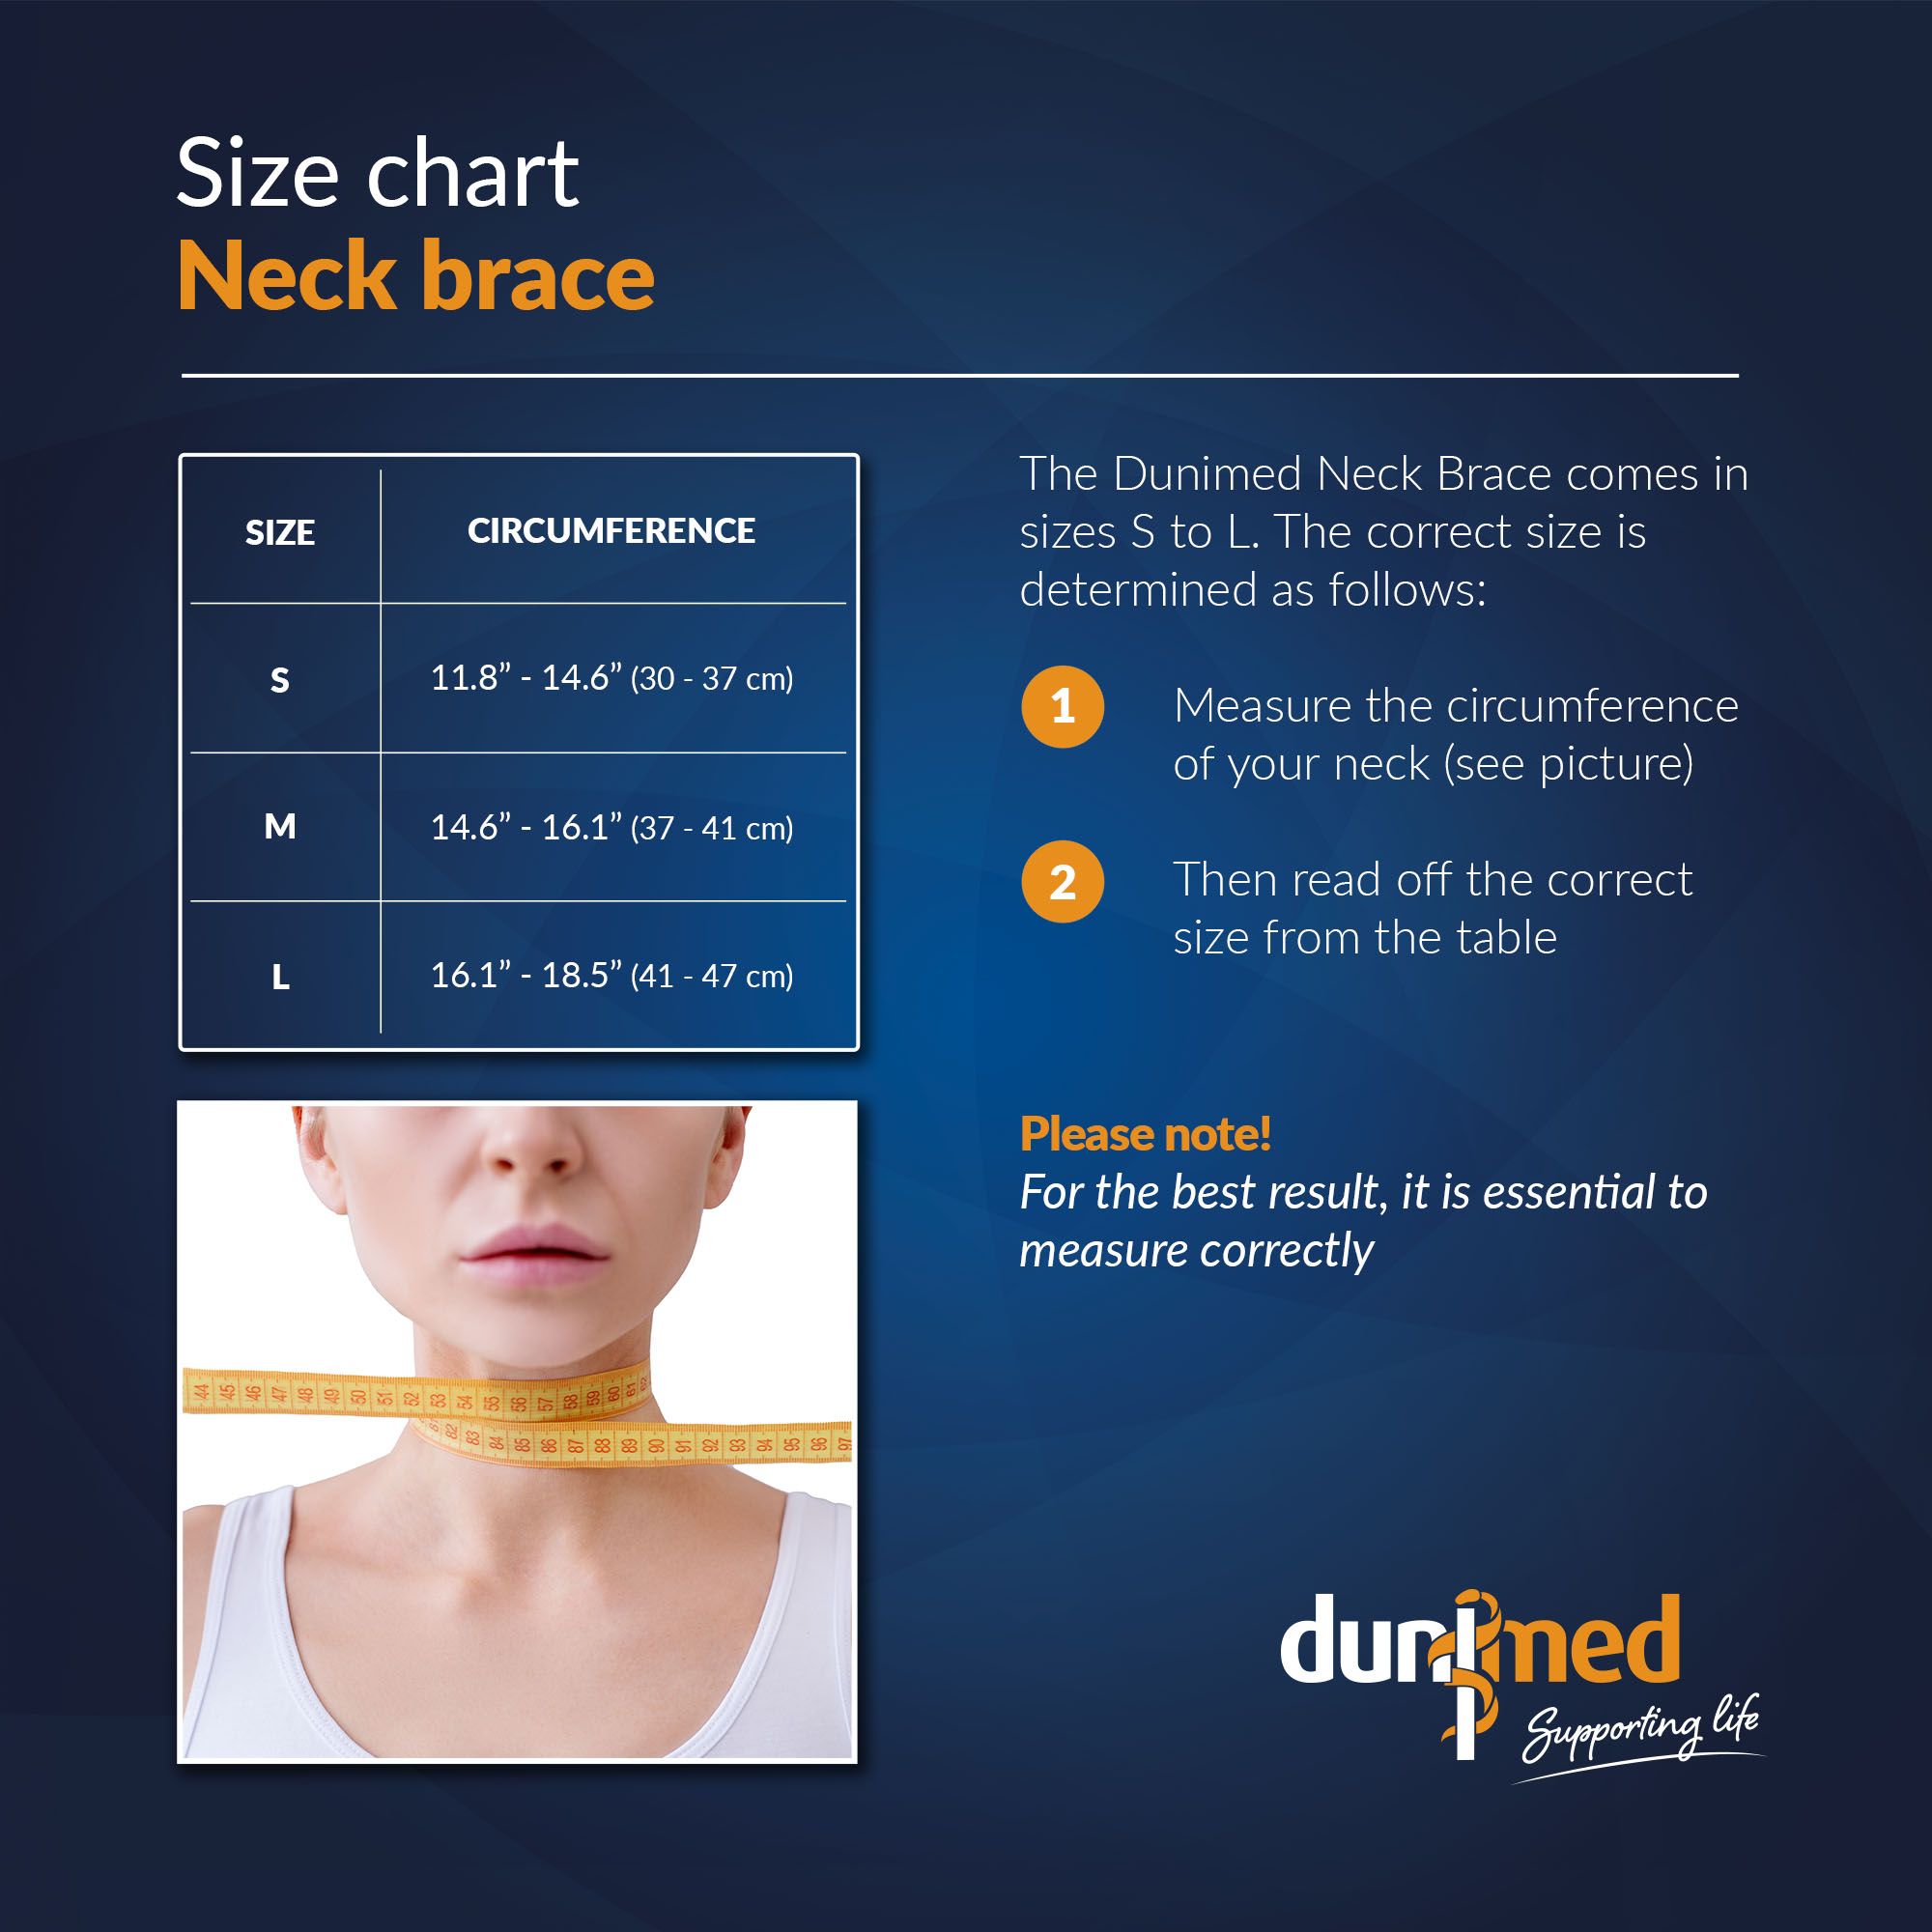 Size chart Dunimed neck brace